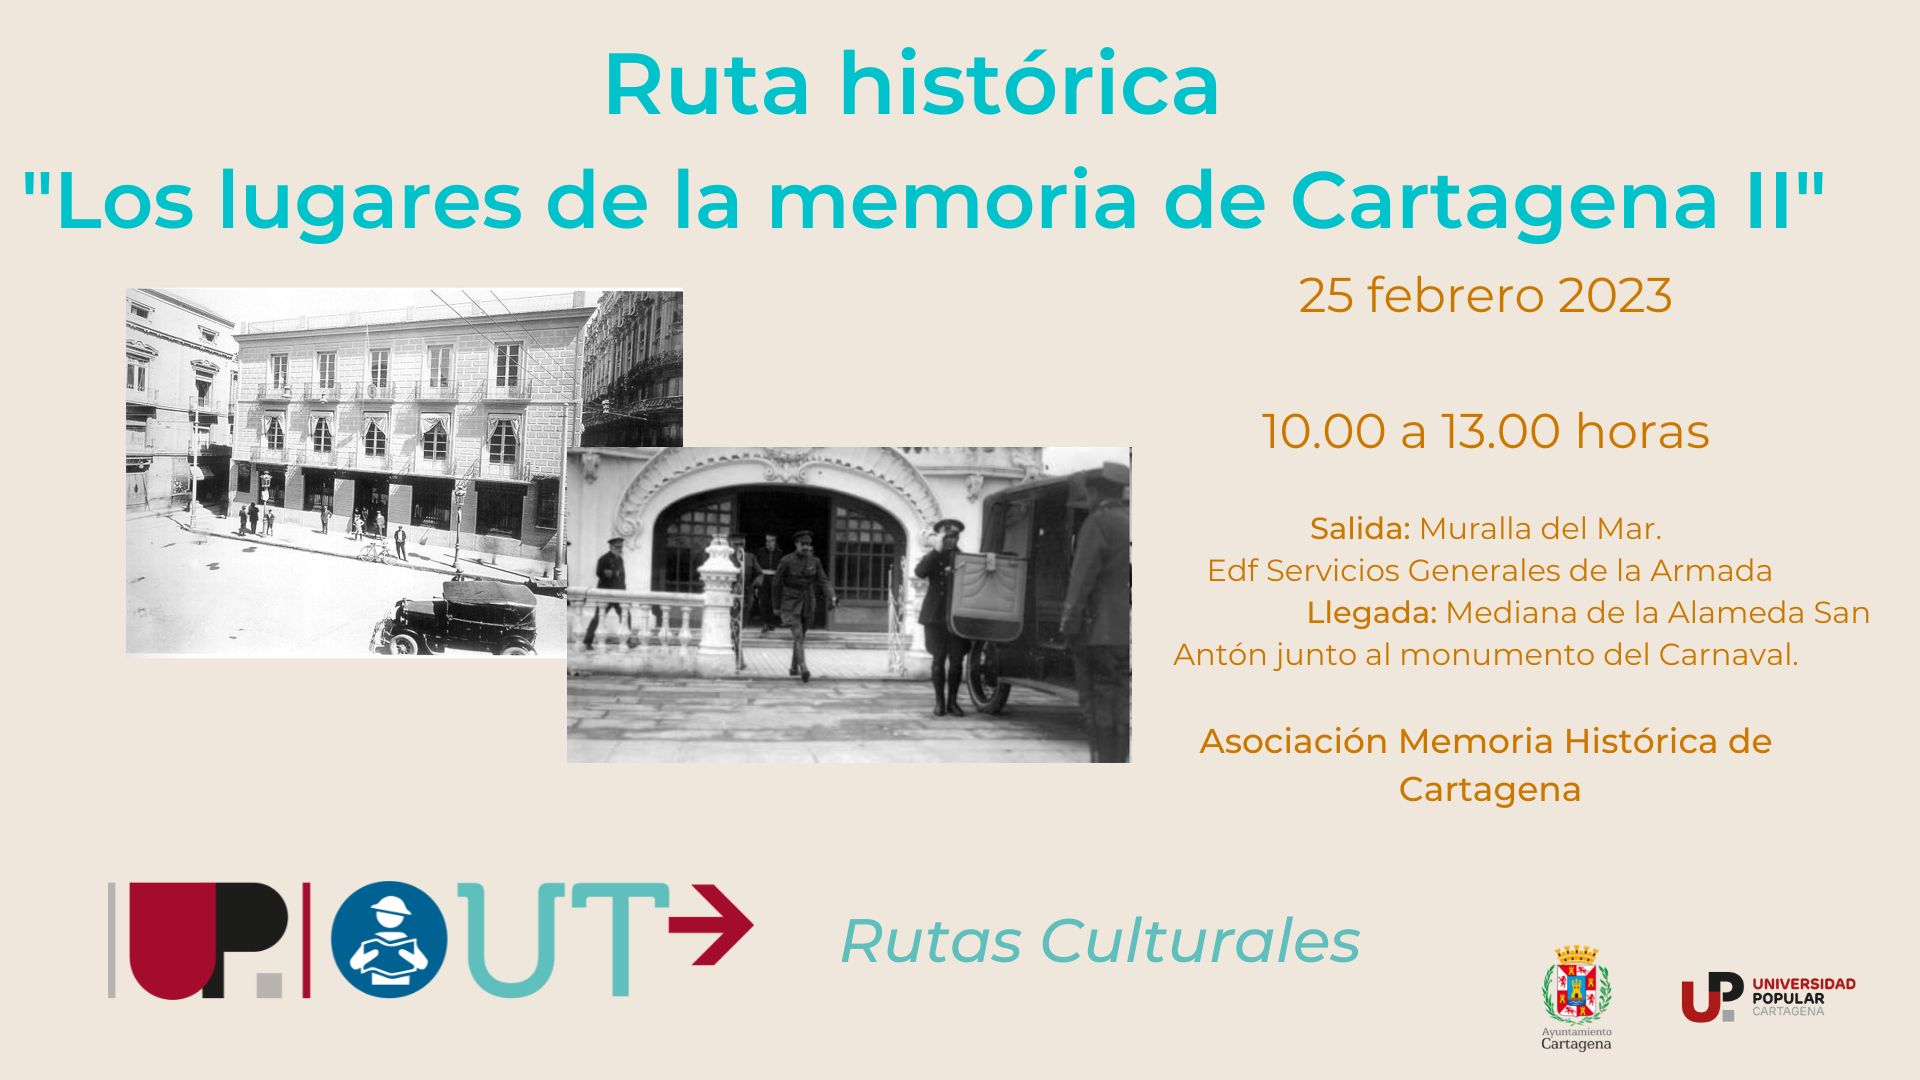 Ruta histórica Los lugares de la memoria de Cartagena II